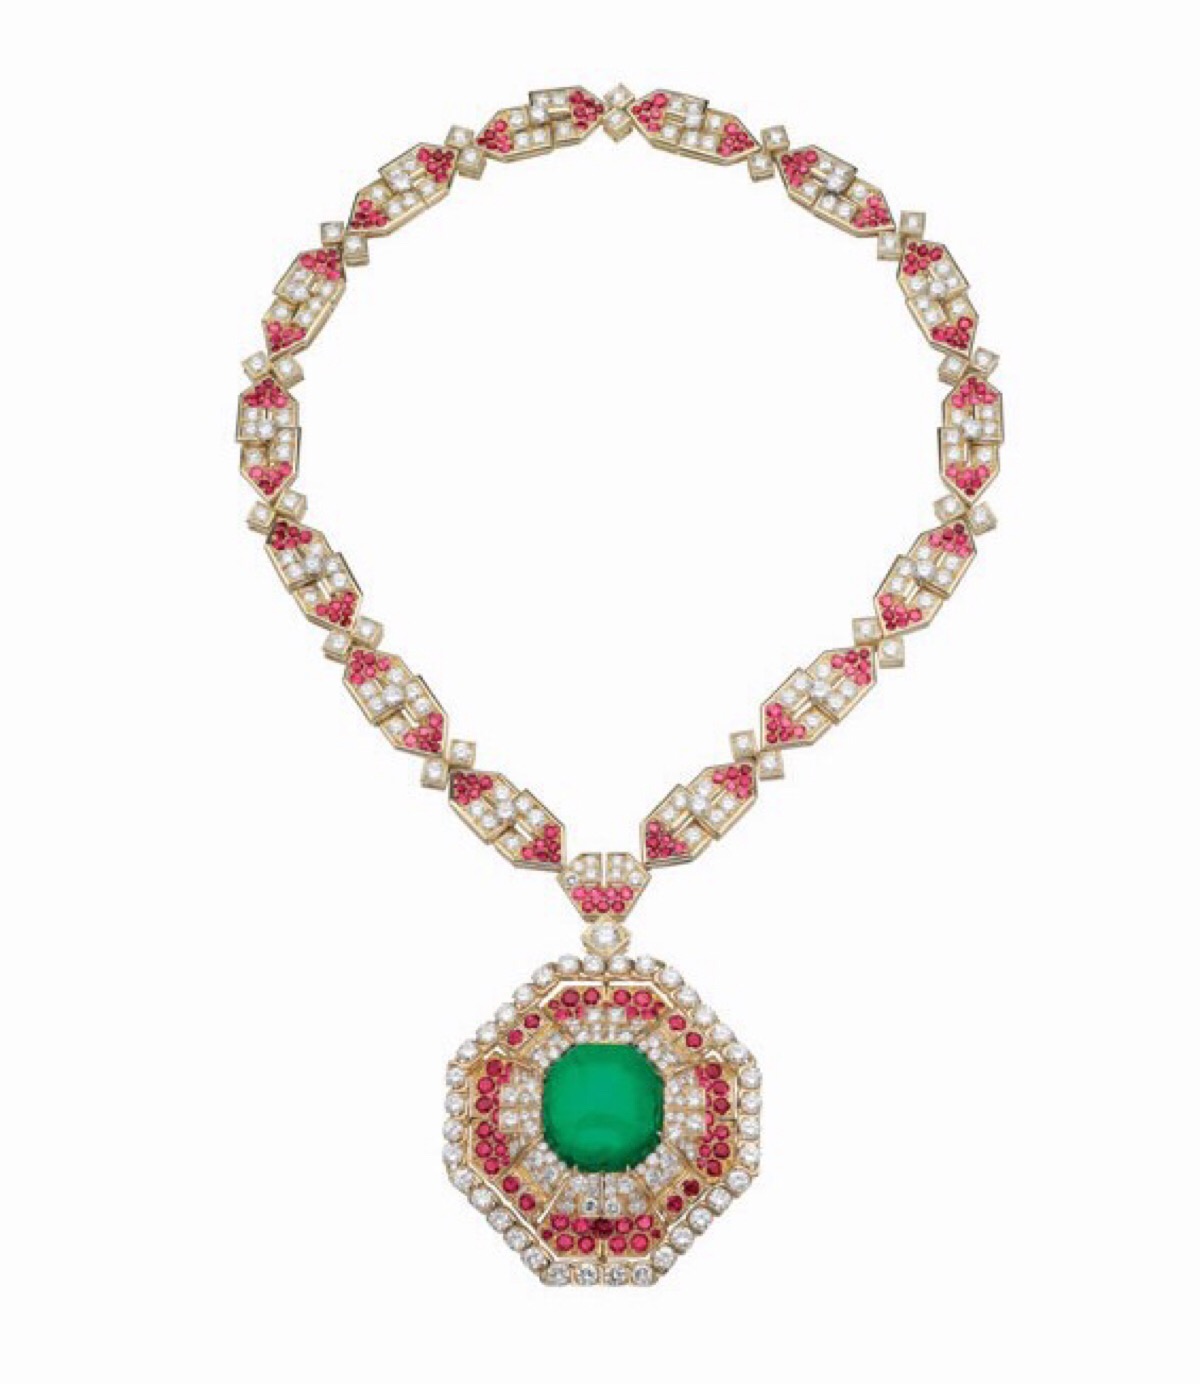 6克拉的弧面切割祖母绿,周围镶嵌红宝石及明亮式切割钻石,项链部分